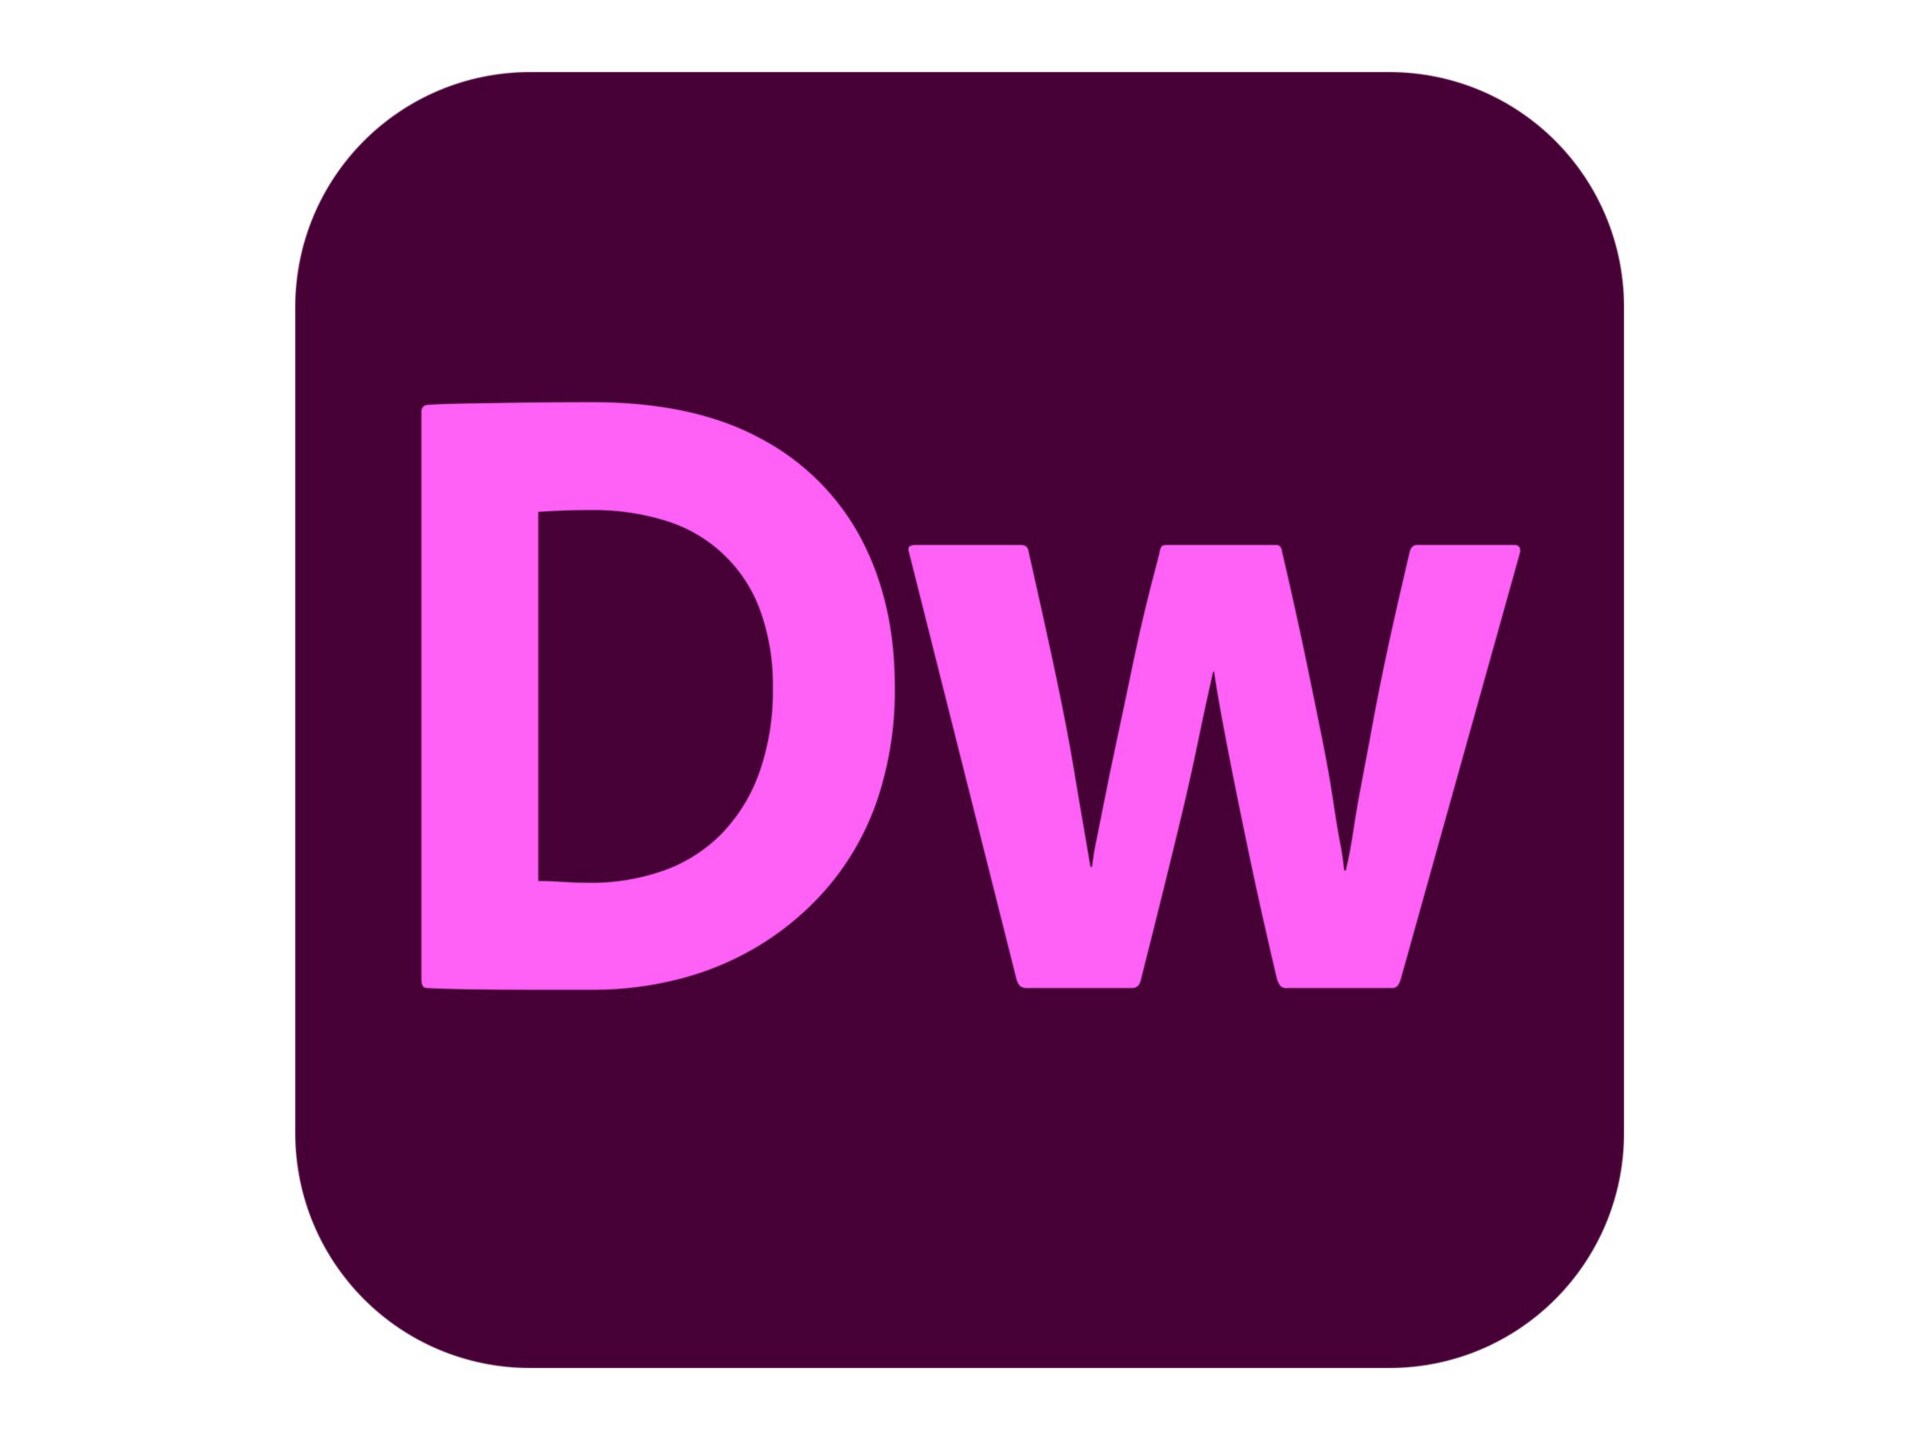 Adobe Dreamweaver CC for Enterprise - Subscription New (9 months) - 1 named